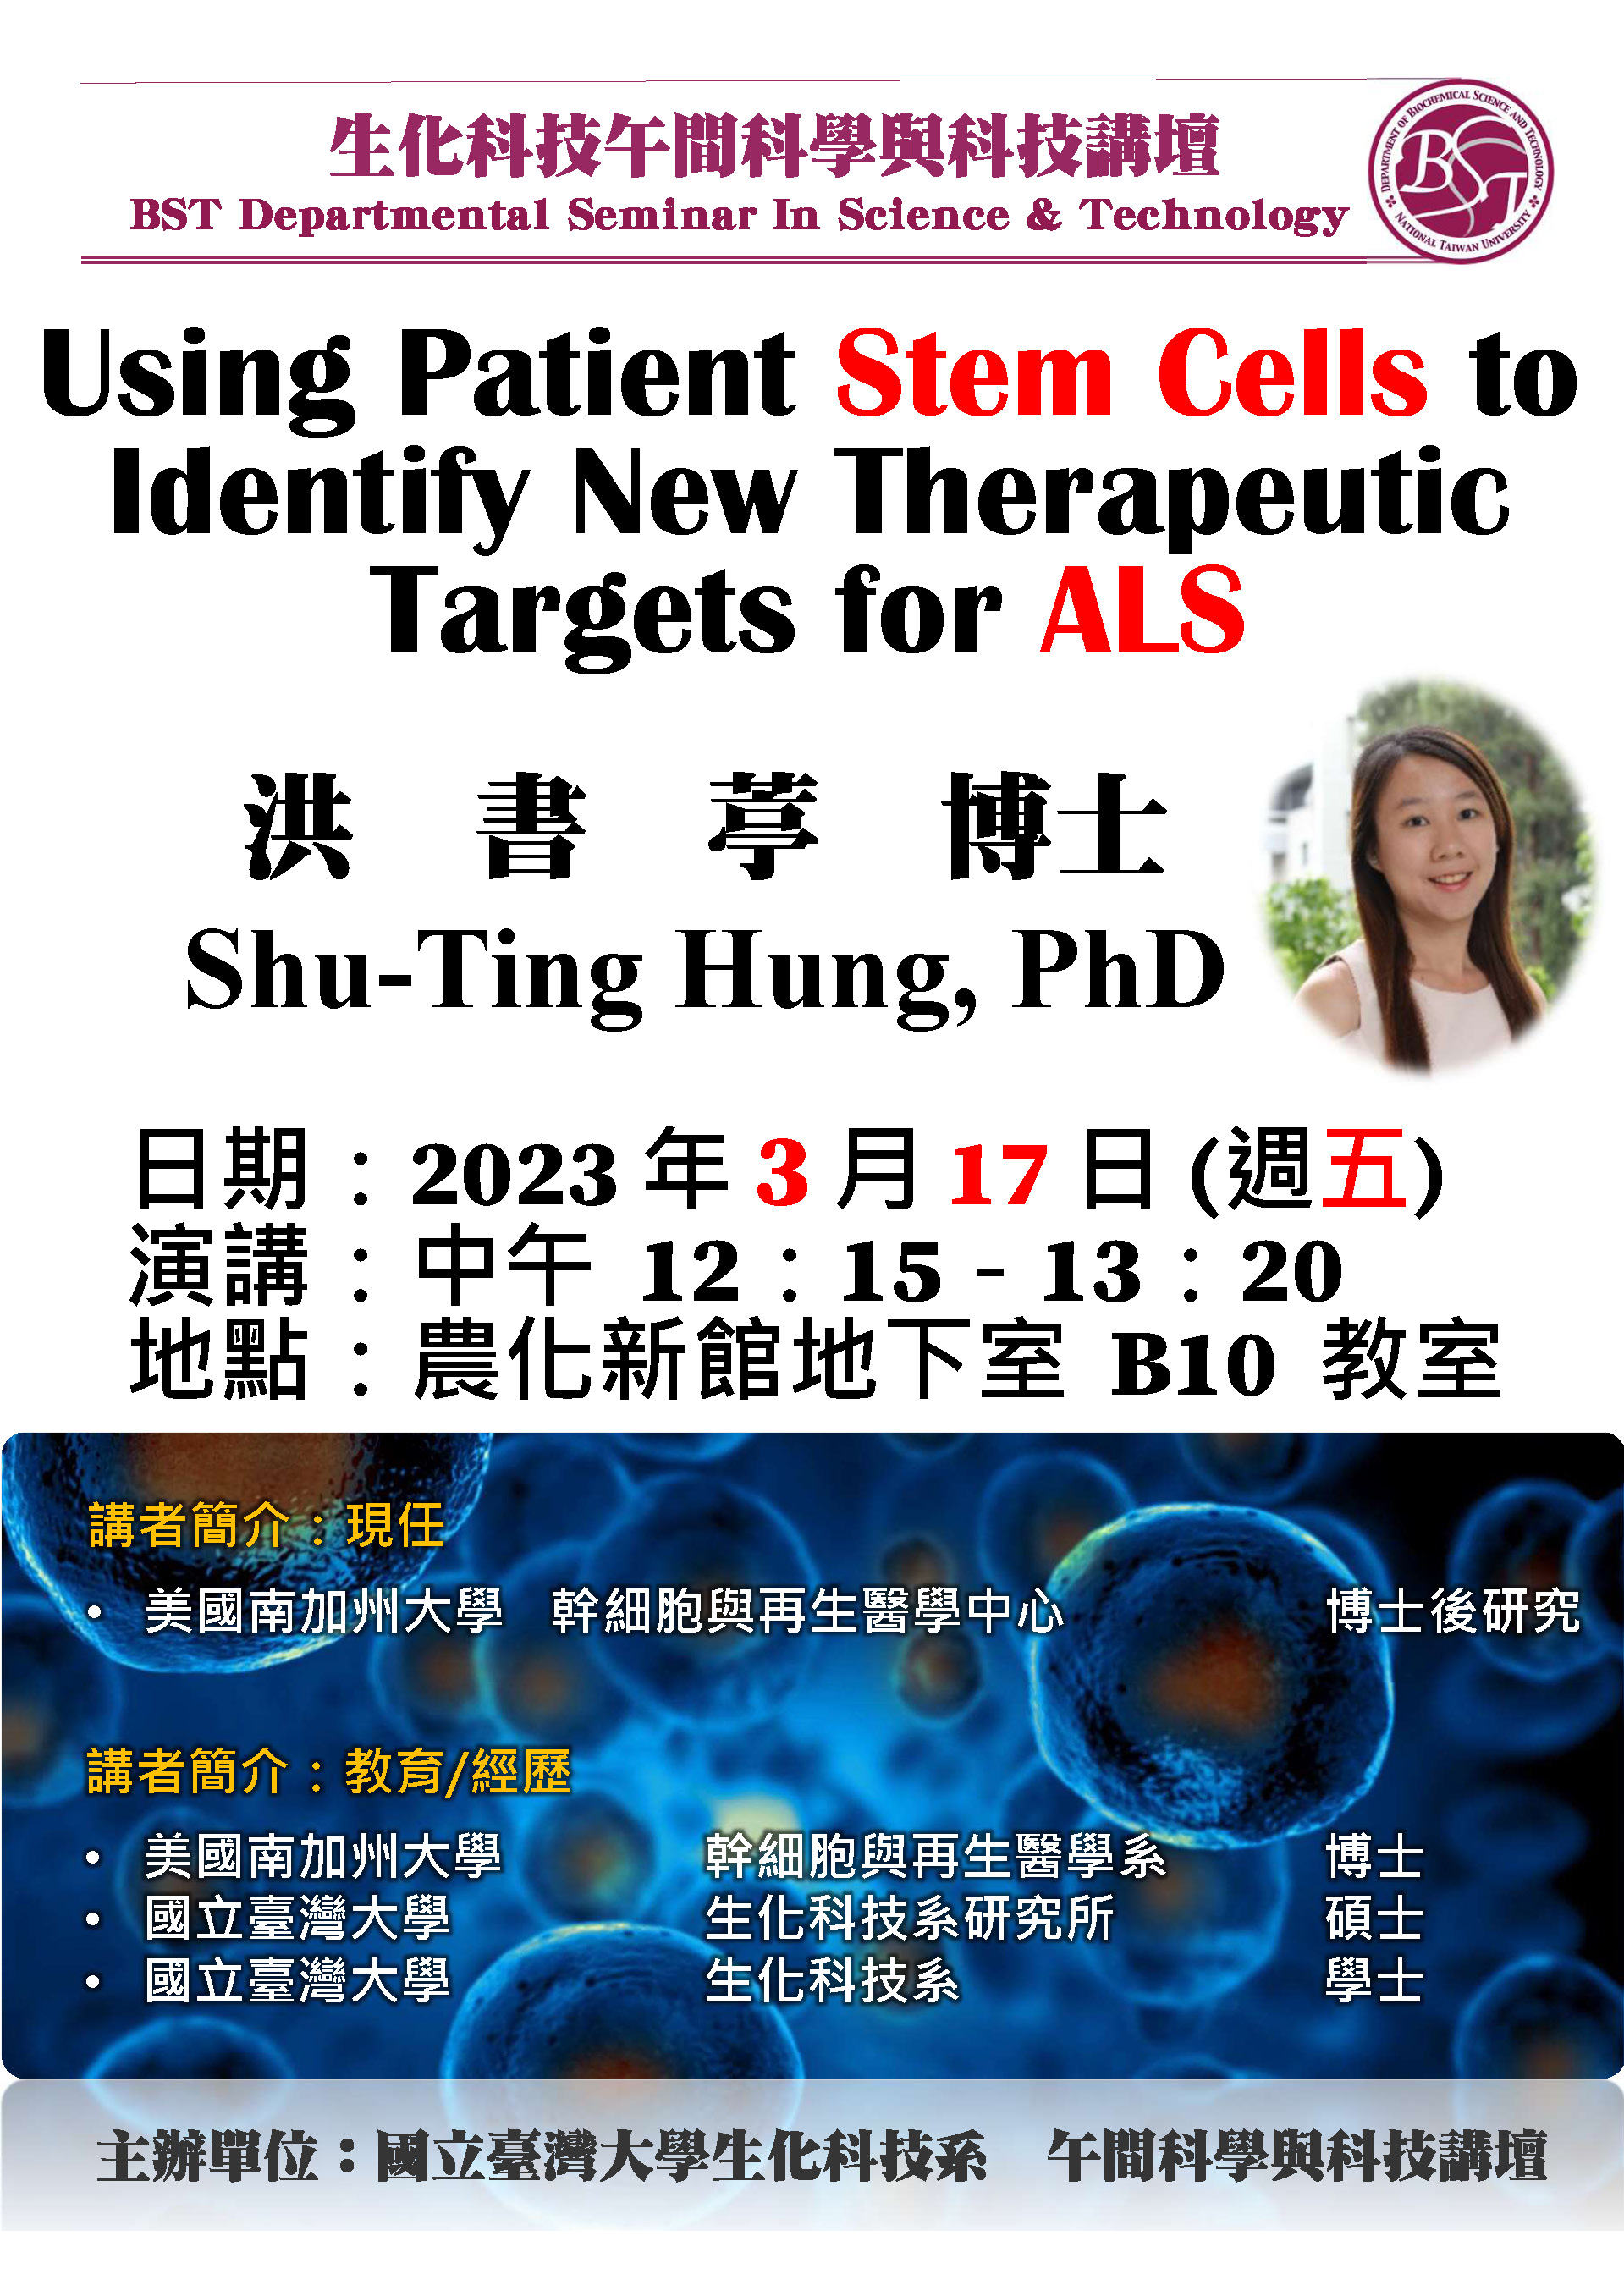 【午間科學與科技講壇】 (3/17/2023) 洪書葶博士-「Using Patient Stem Cells to Identify New Therapeutic Targets for ALS」